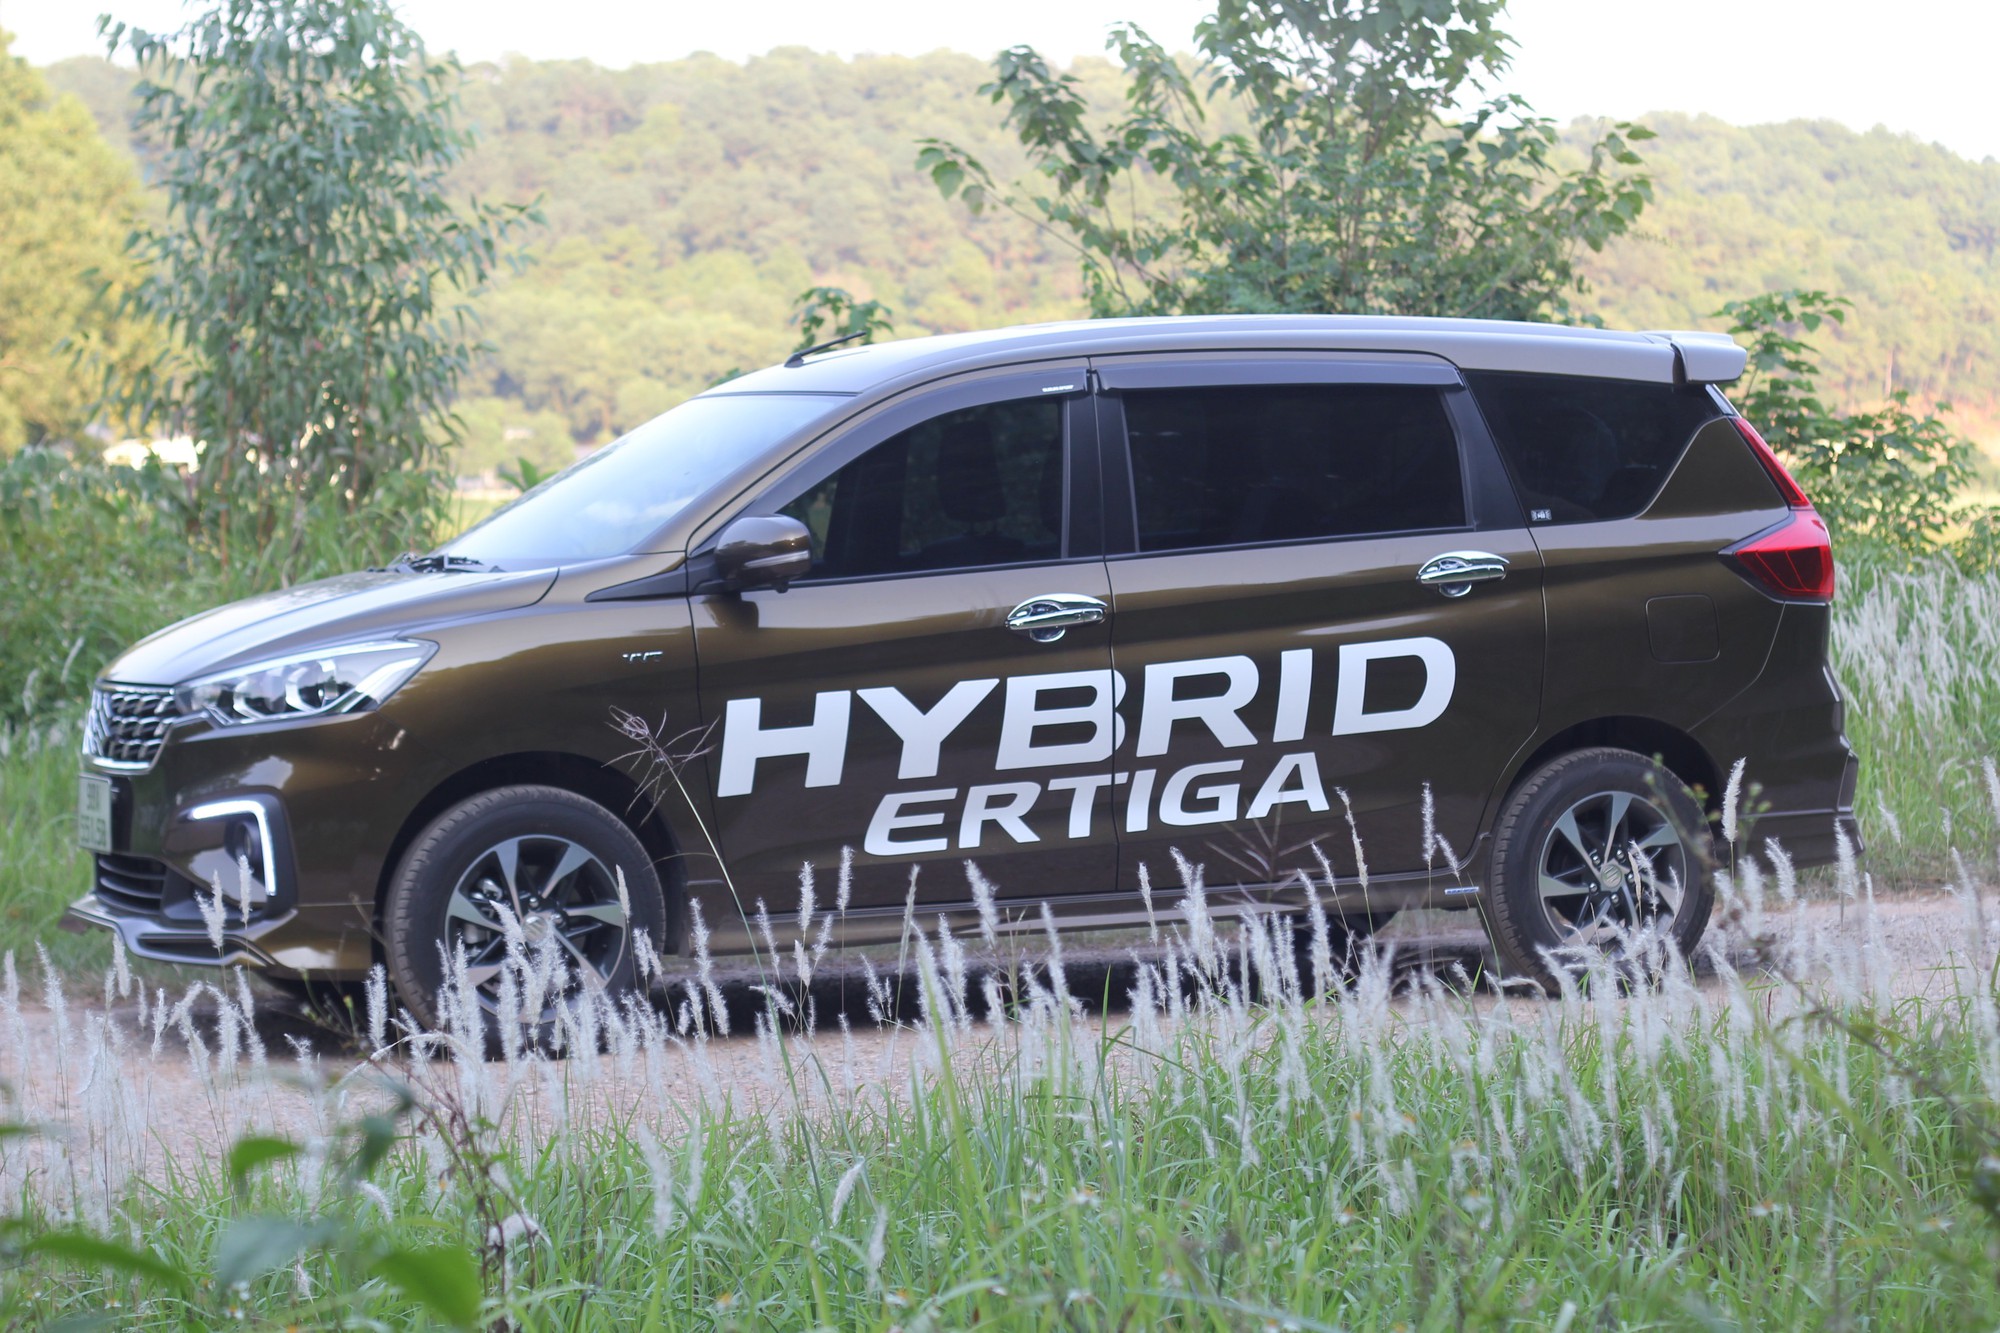 Tính ưu việt của công nghệ tạm ngắt động cơ trên Suzuki Ertiga Hybrid - Ảnh 1.